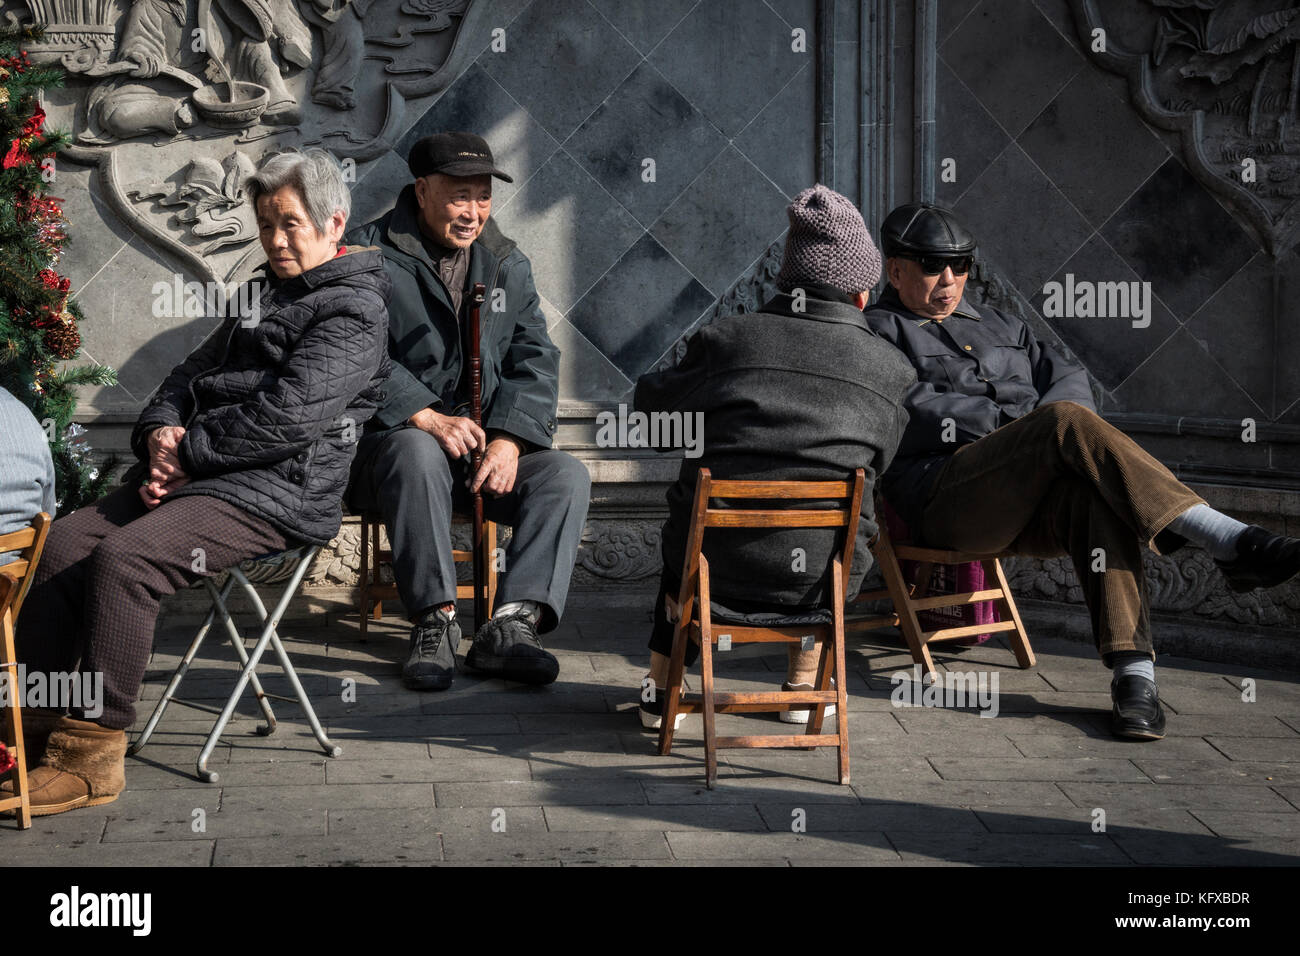 Los ancianos sentados y socializar, Shanghai Foto de stock